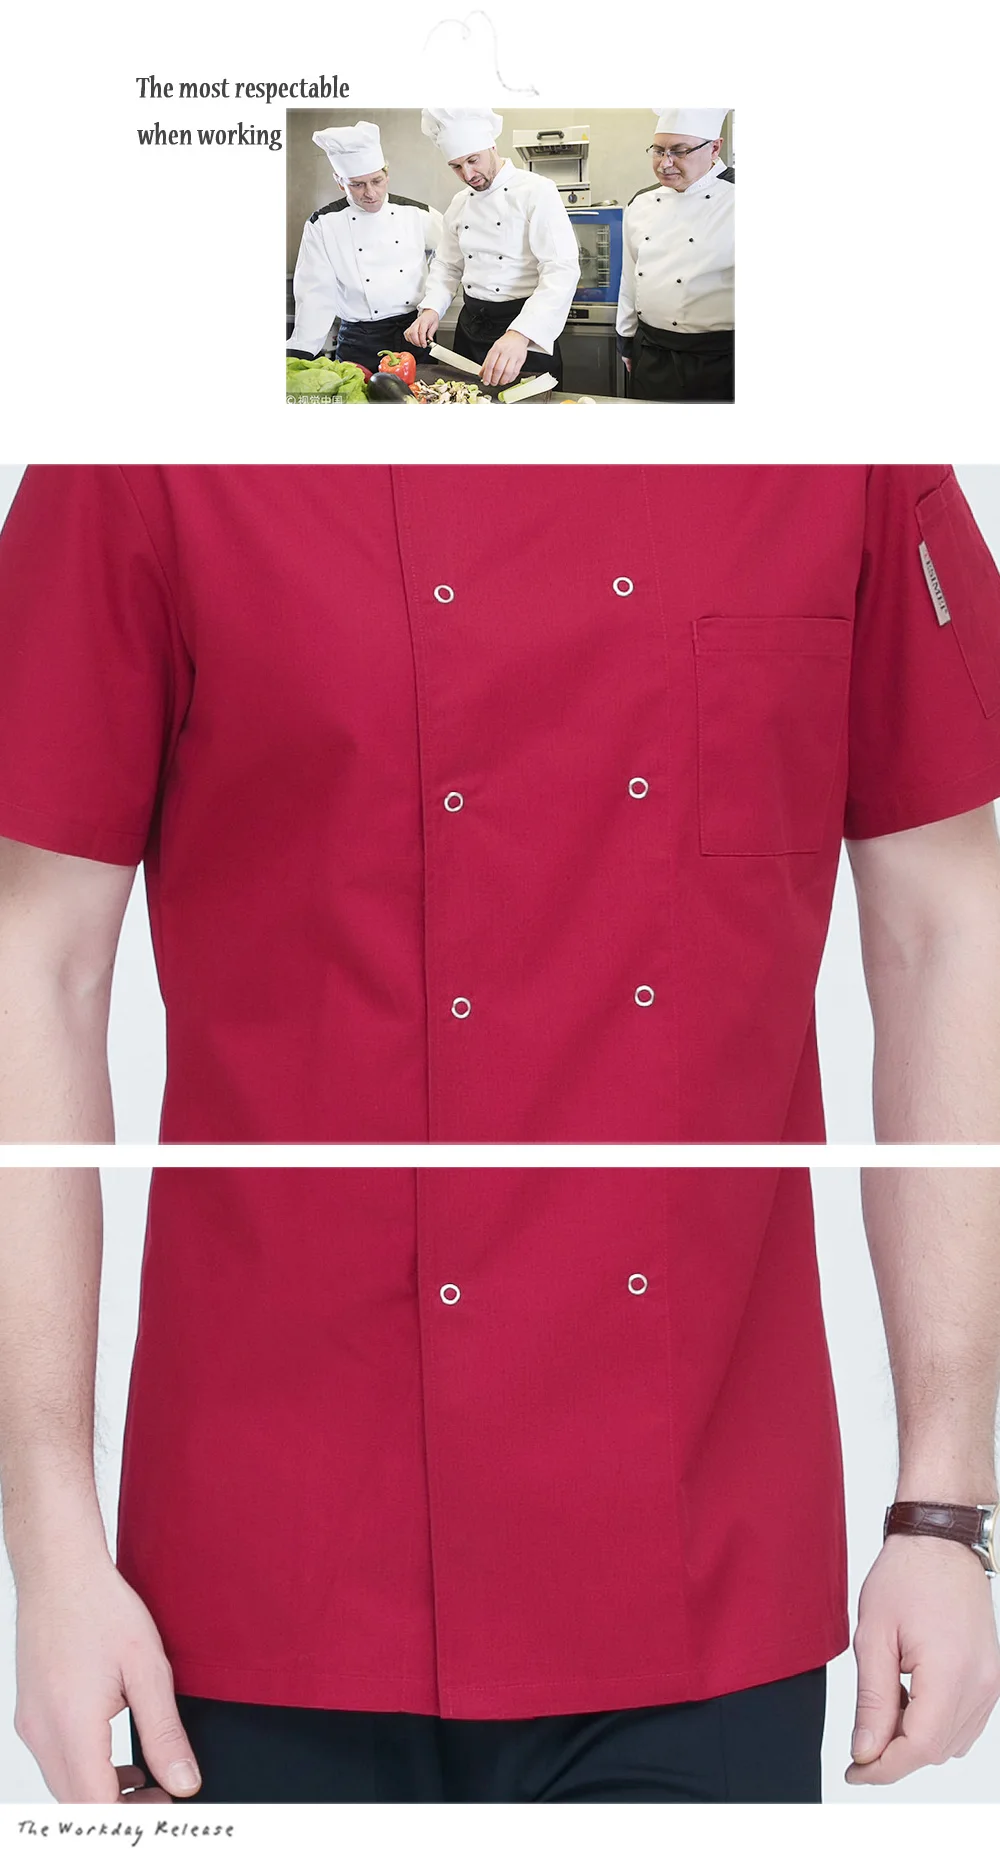 Унисекс высокого качества с короткими рукавами рабочая одежда шеф-повара двубортная еда обслуживание шеф-повара Униформа Ресторан